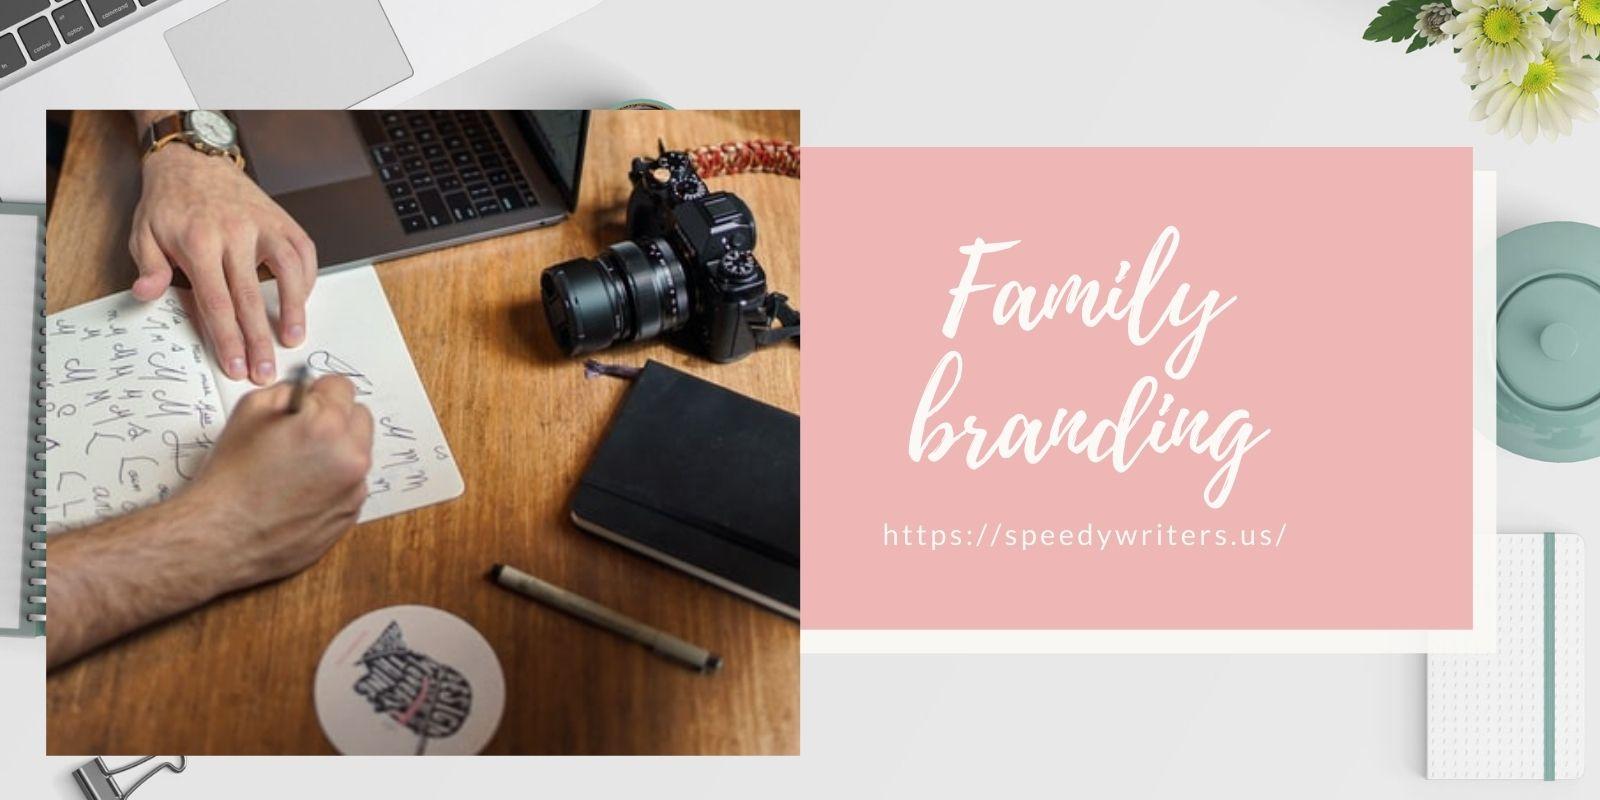 Family branding